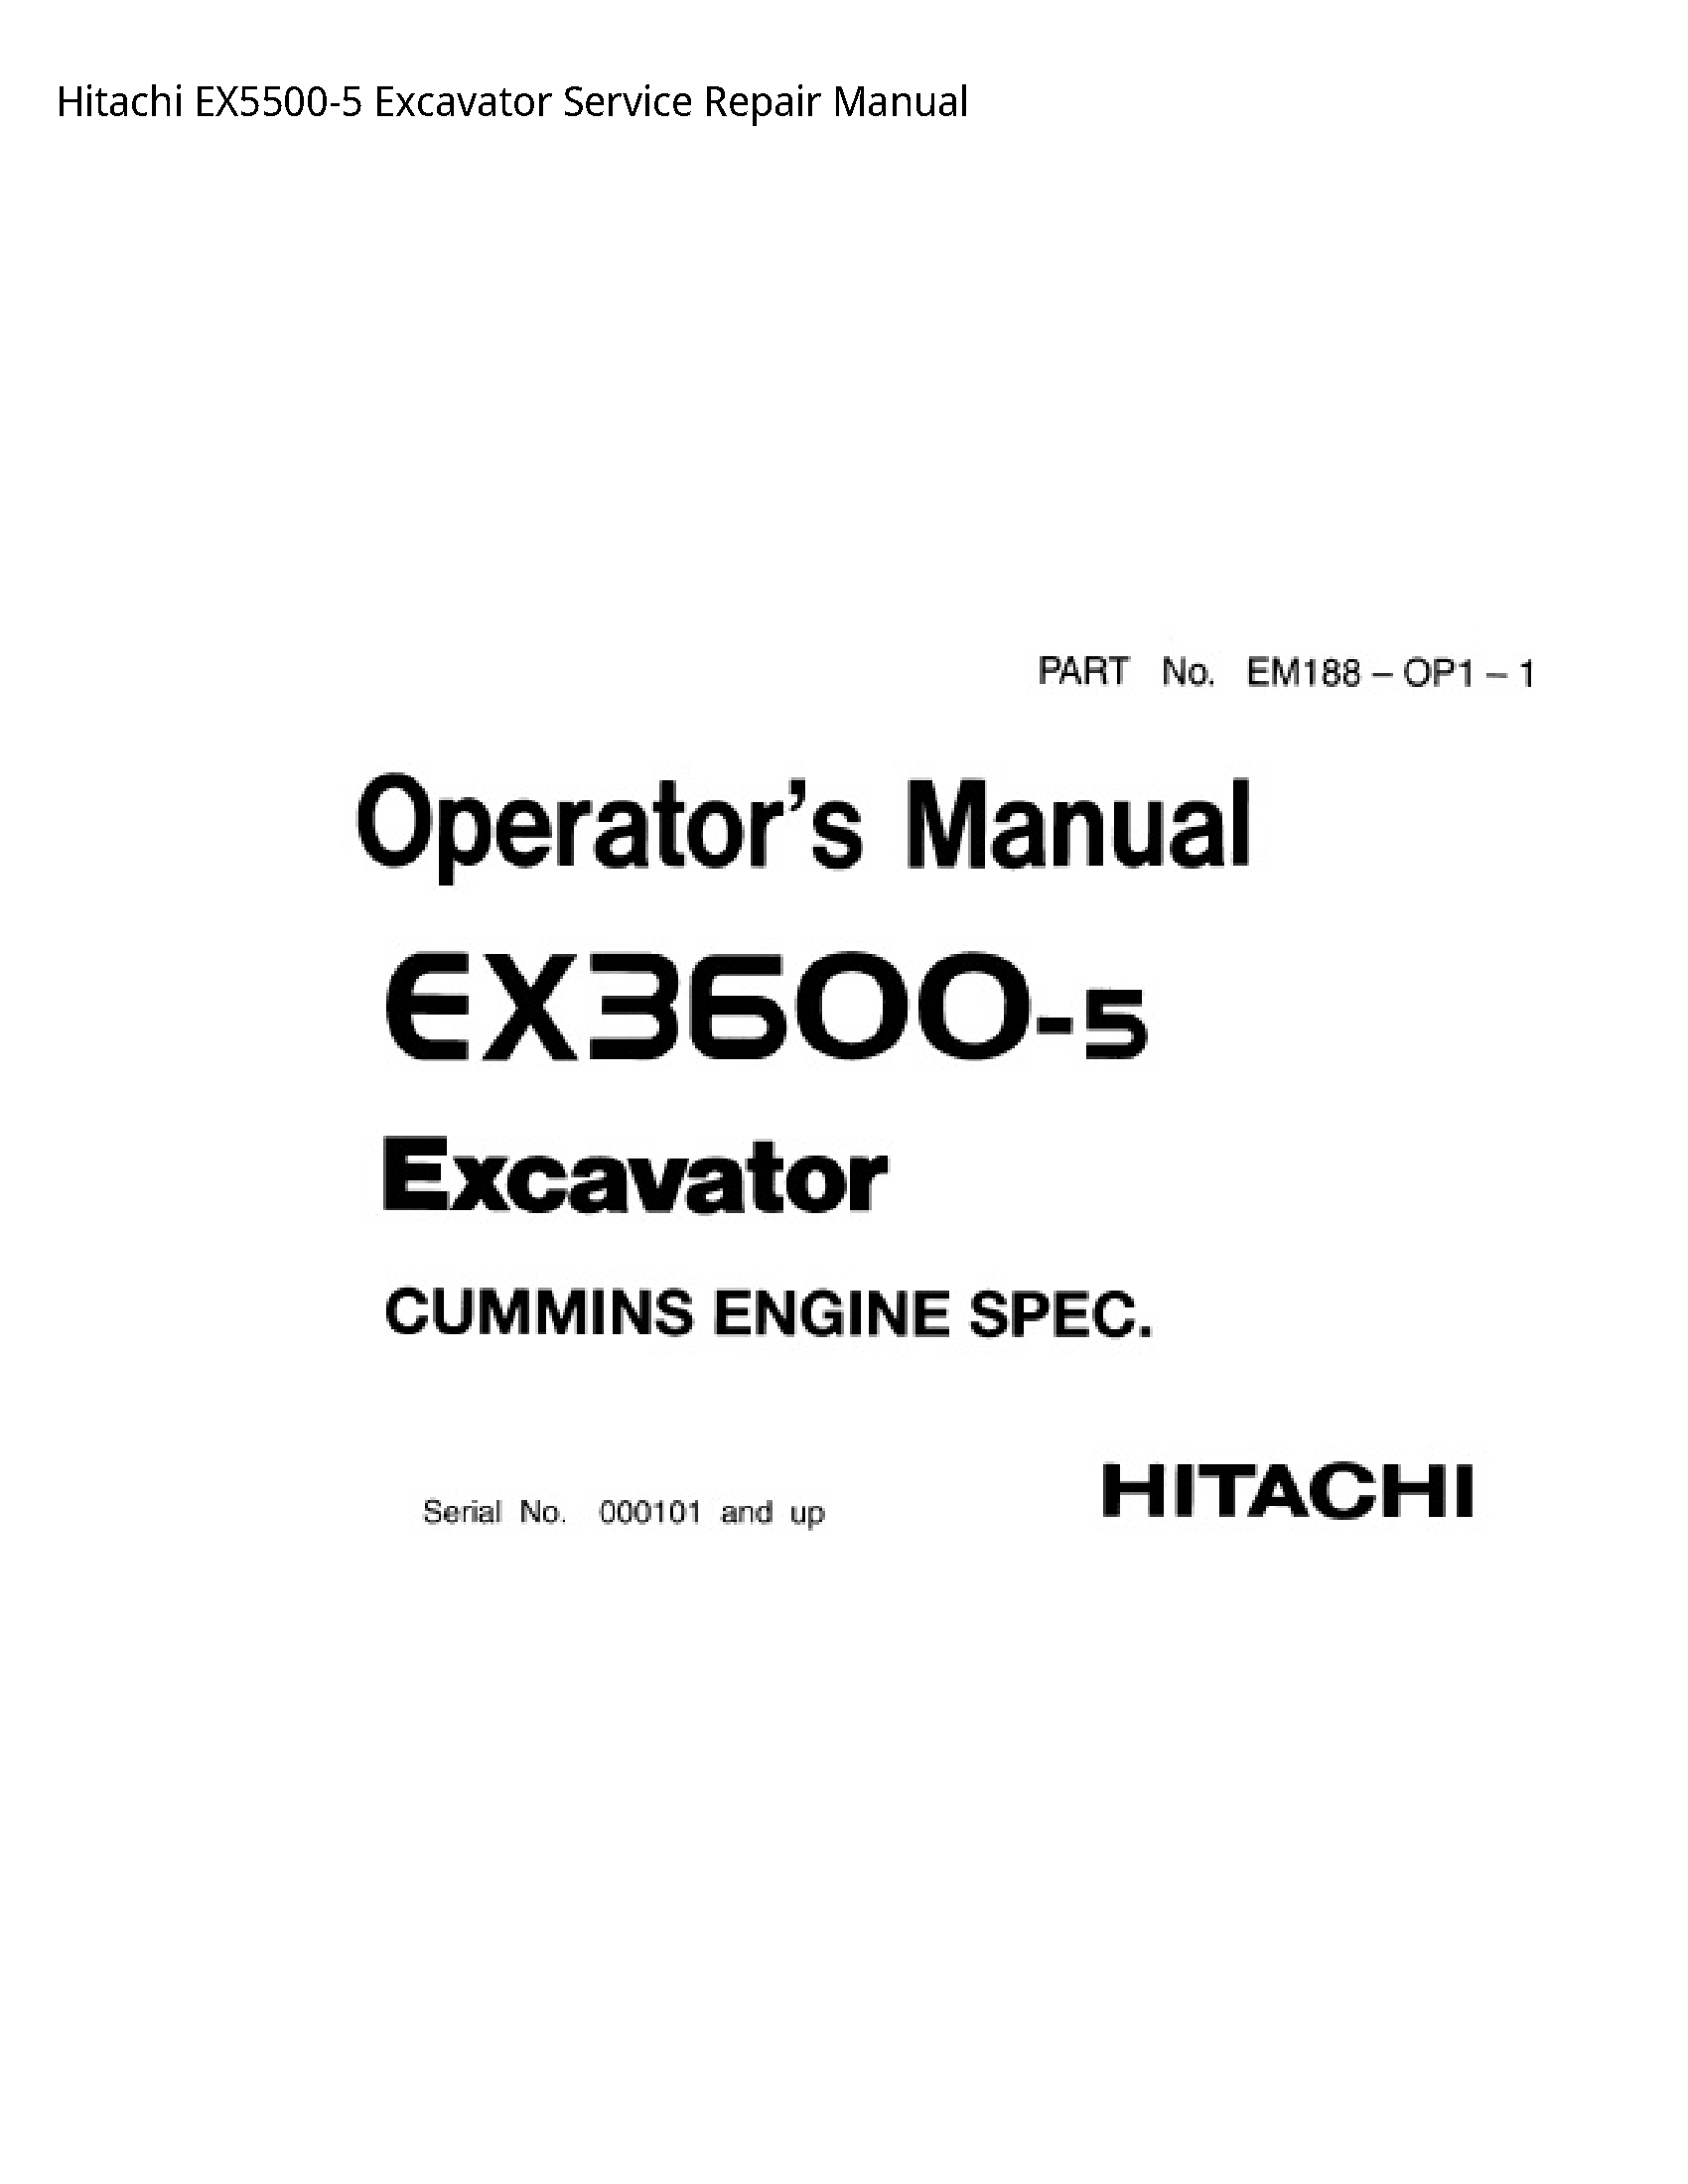 Hitachi EX5500-5 Excavator manual